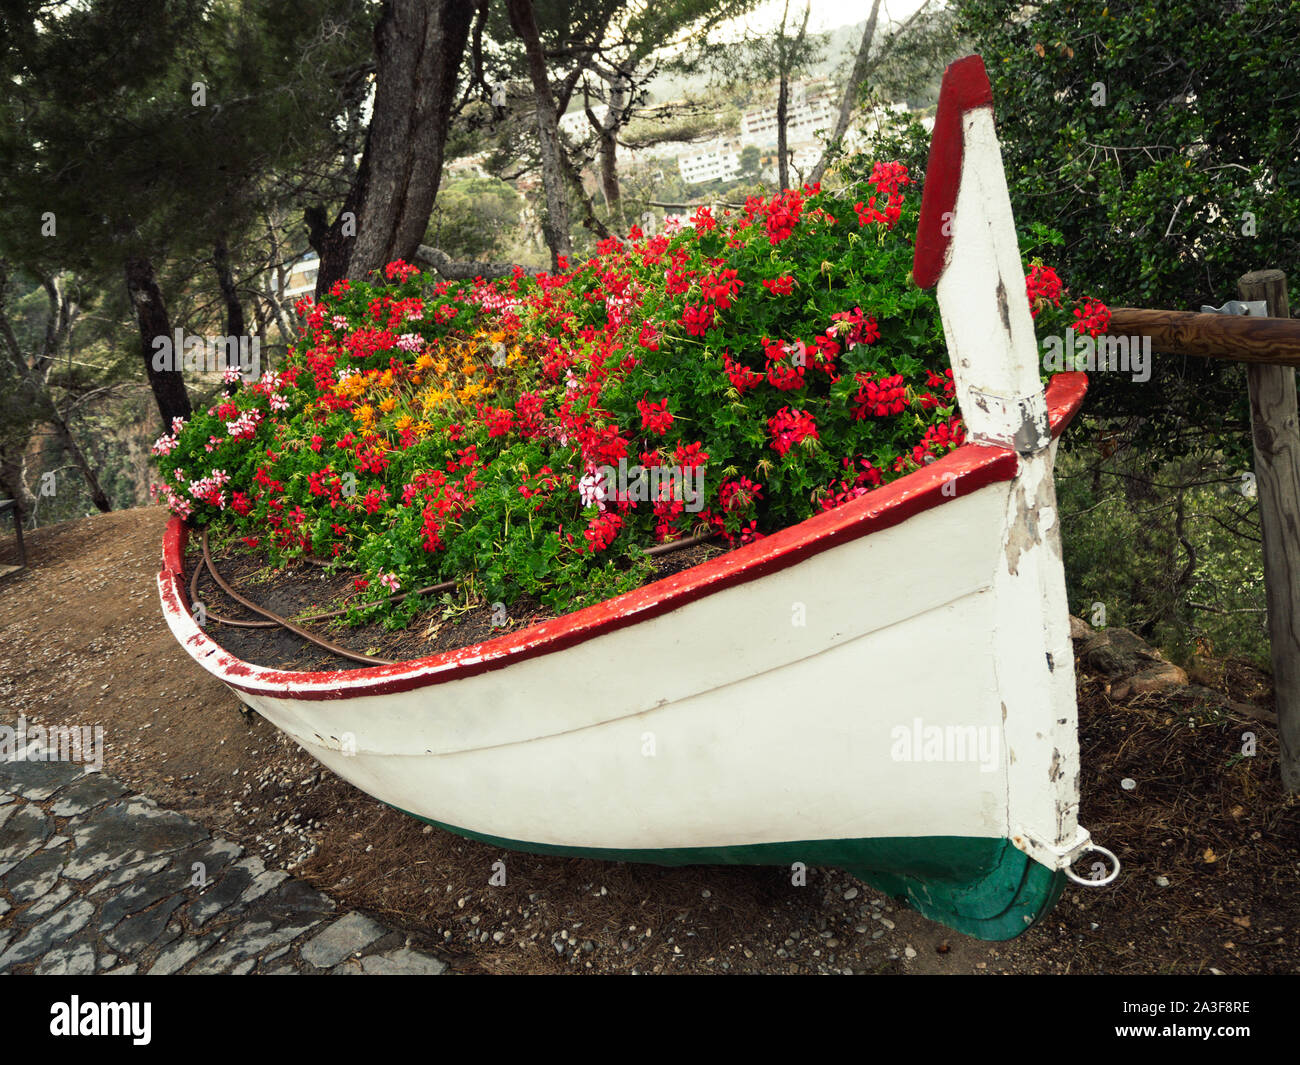 Vecchia barca da pesca riempito con fiori colorati Foto Stock